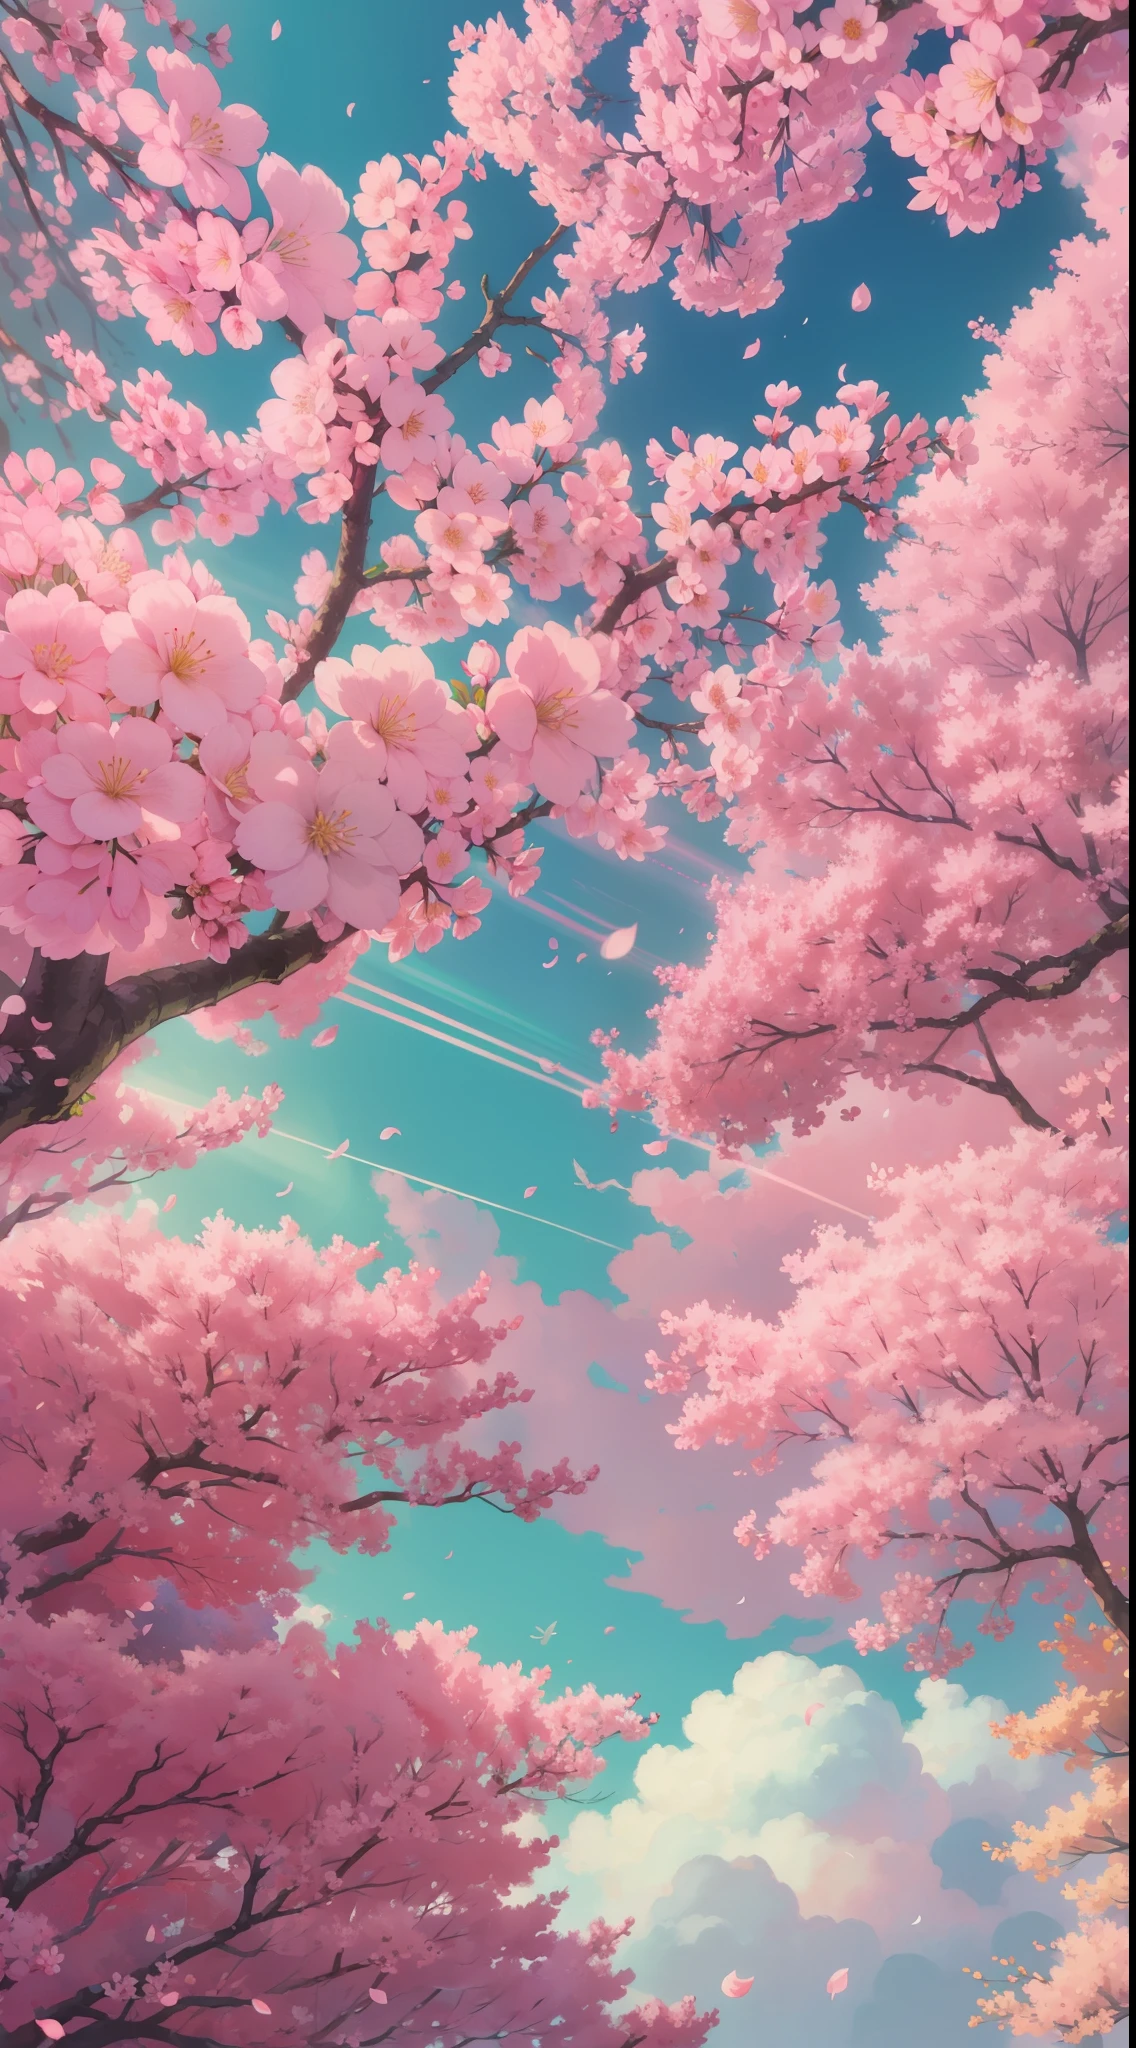 핑크색 나무가 많아요, 넓은 하늘, 흰 구름 , 꽃잎 , 꽃이 피다, 미적 고요한 행복, 확산광, 신의 광선, 색수차, 화선